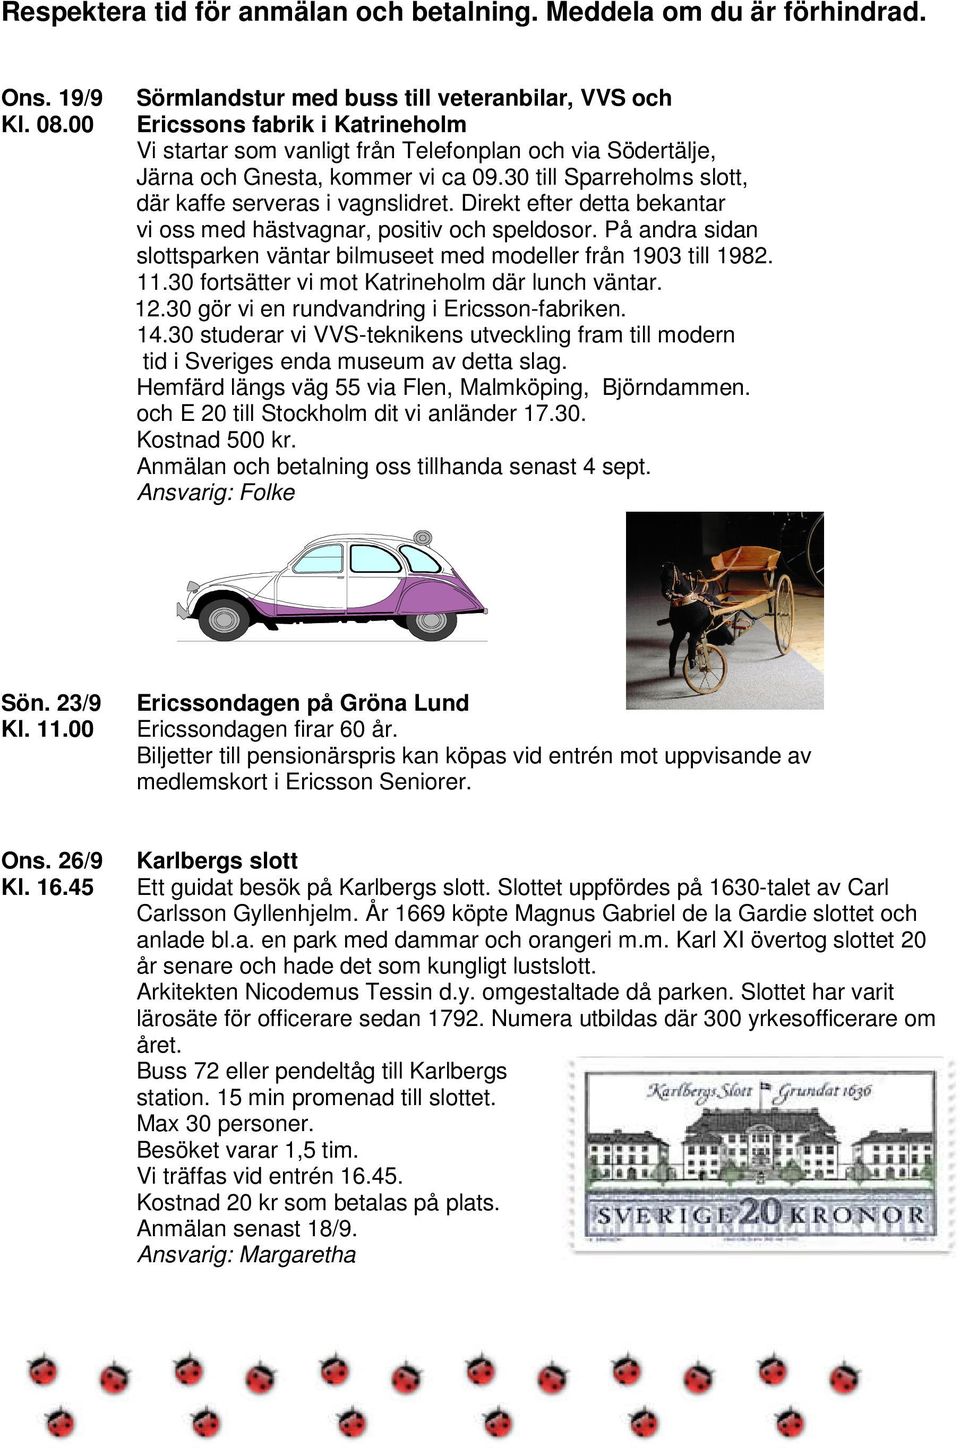 På andra sidan slottsparken väntar bilmuseet med modeller från 1903 till 1982. 11.30 fortsätter vi mot Katrineholm där lunch väntar. 12.30 gör vi en rundvandring i Ericsson-fabriken. 14.